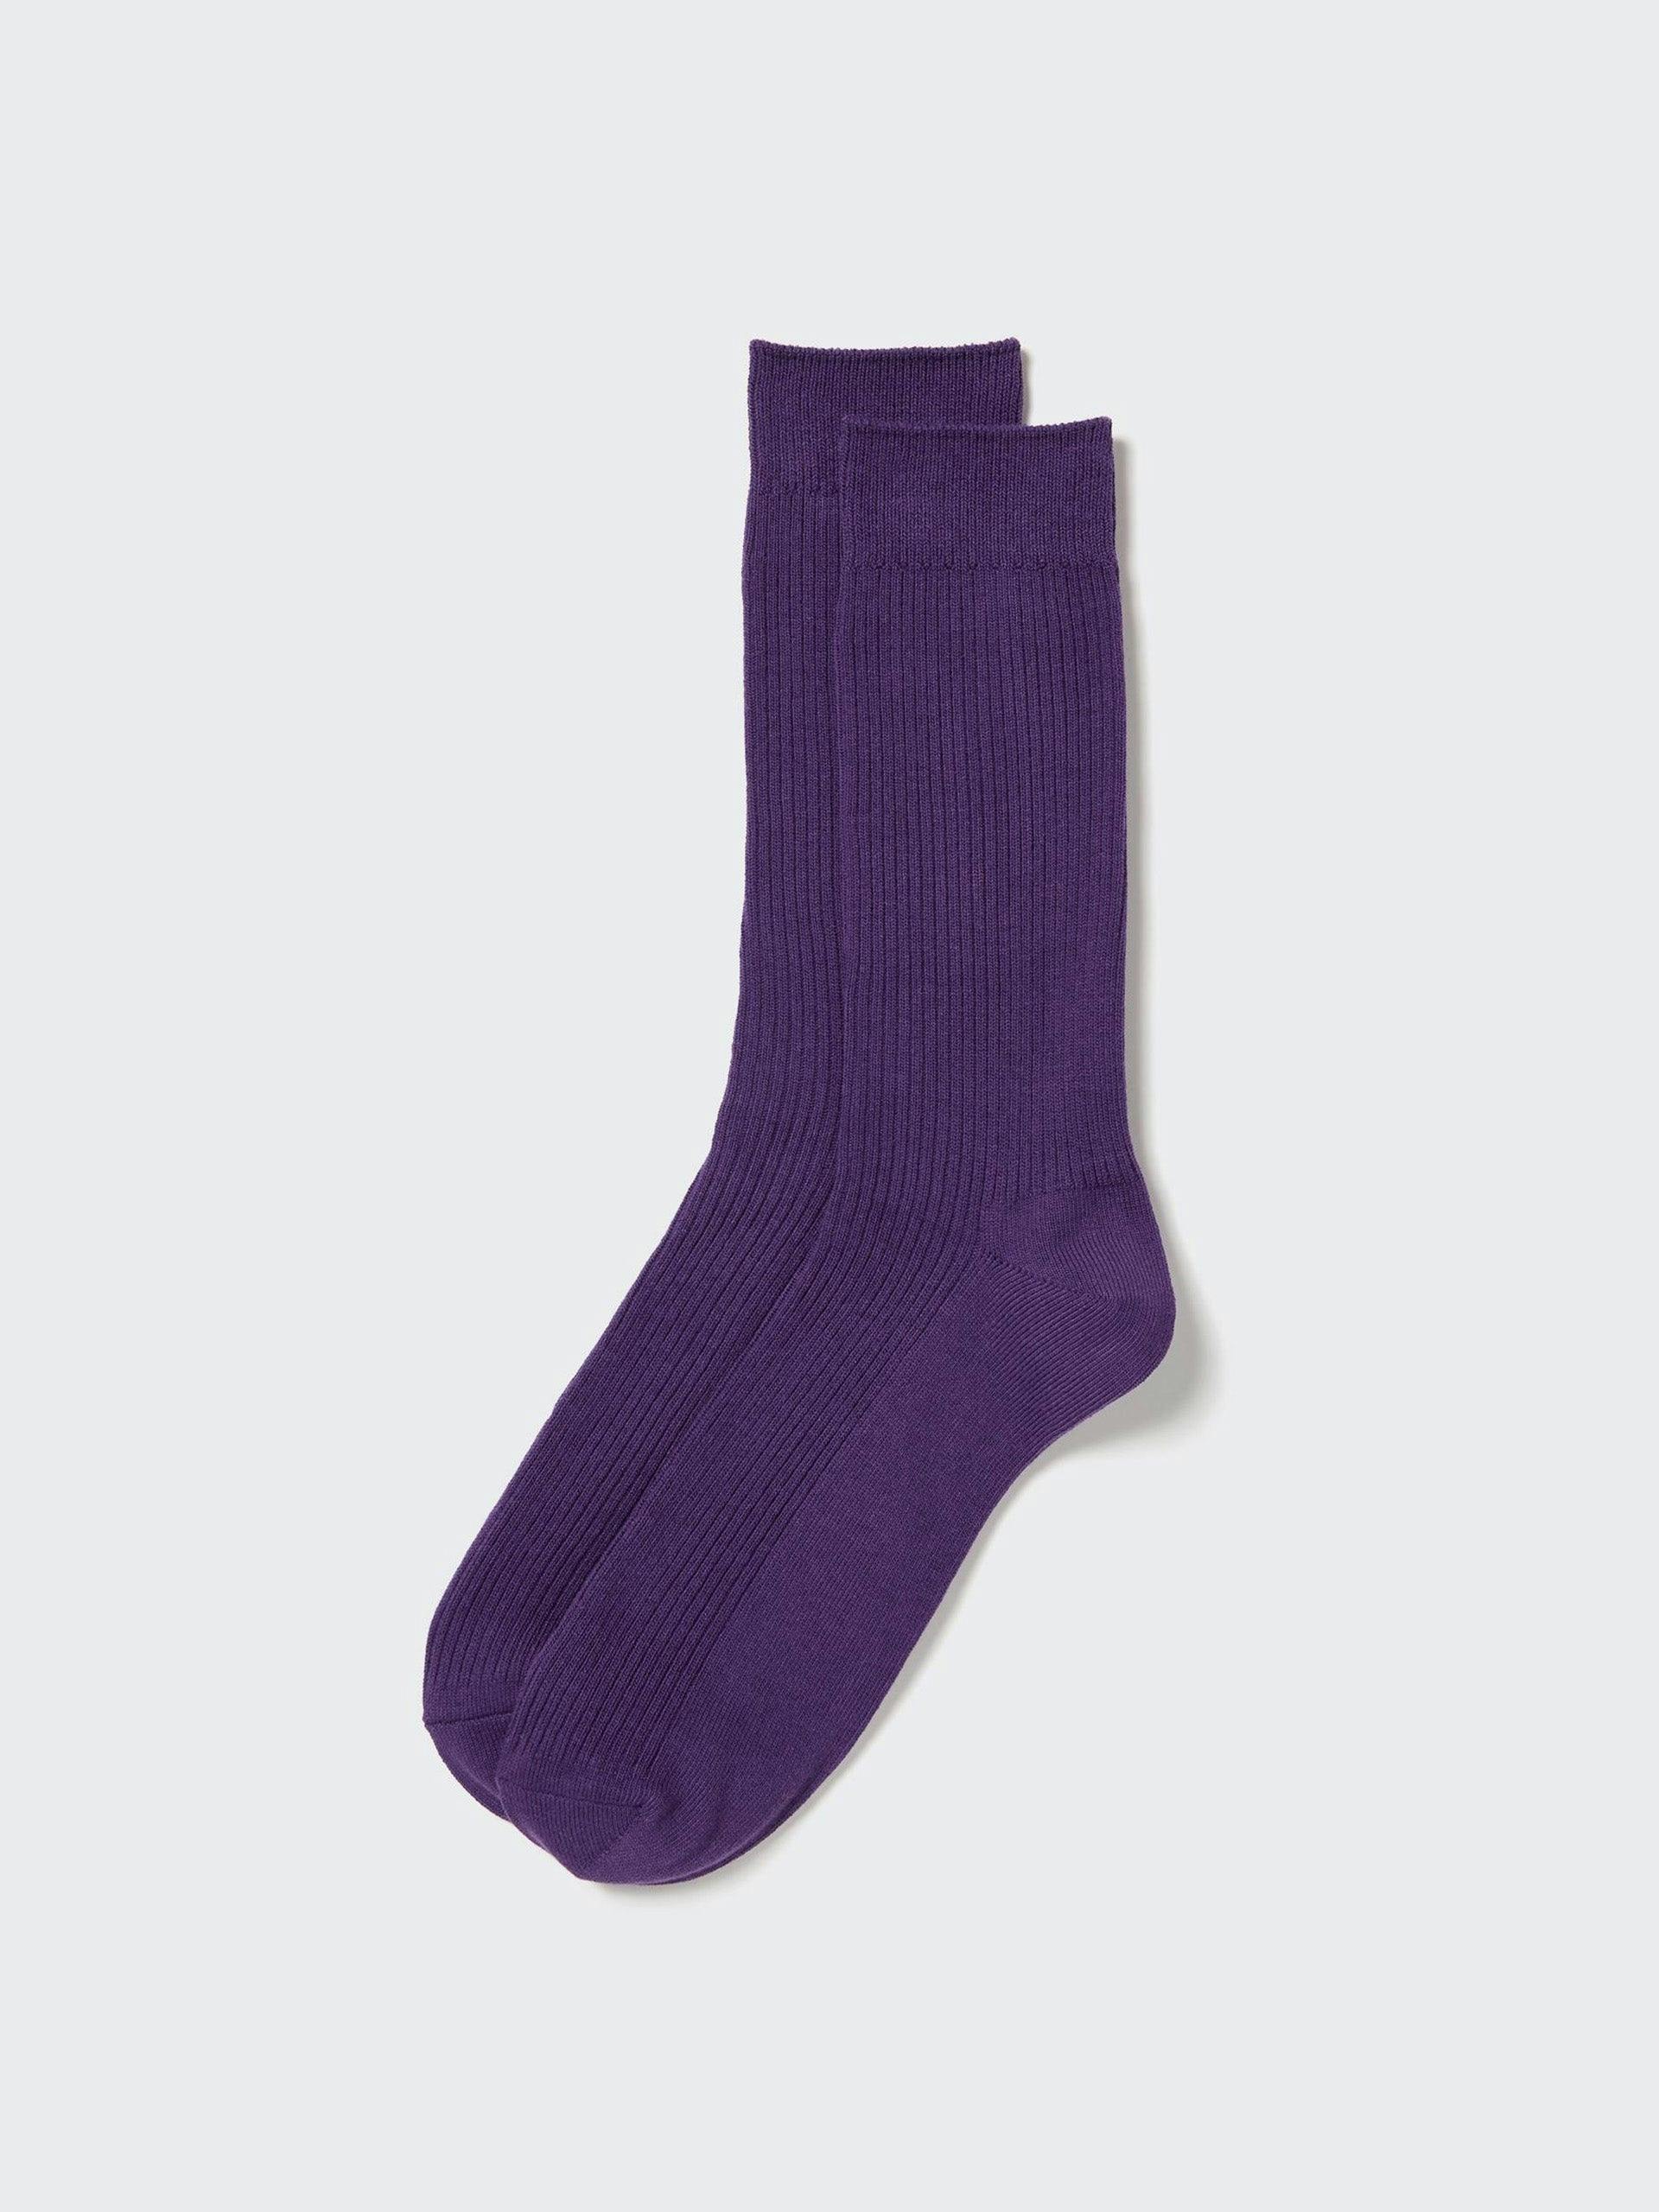 Ribbed socks in purple